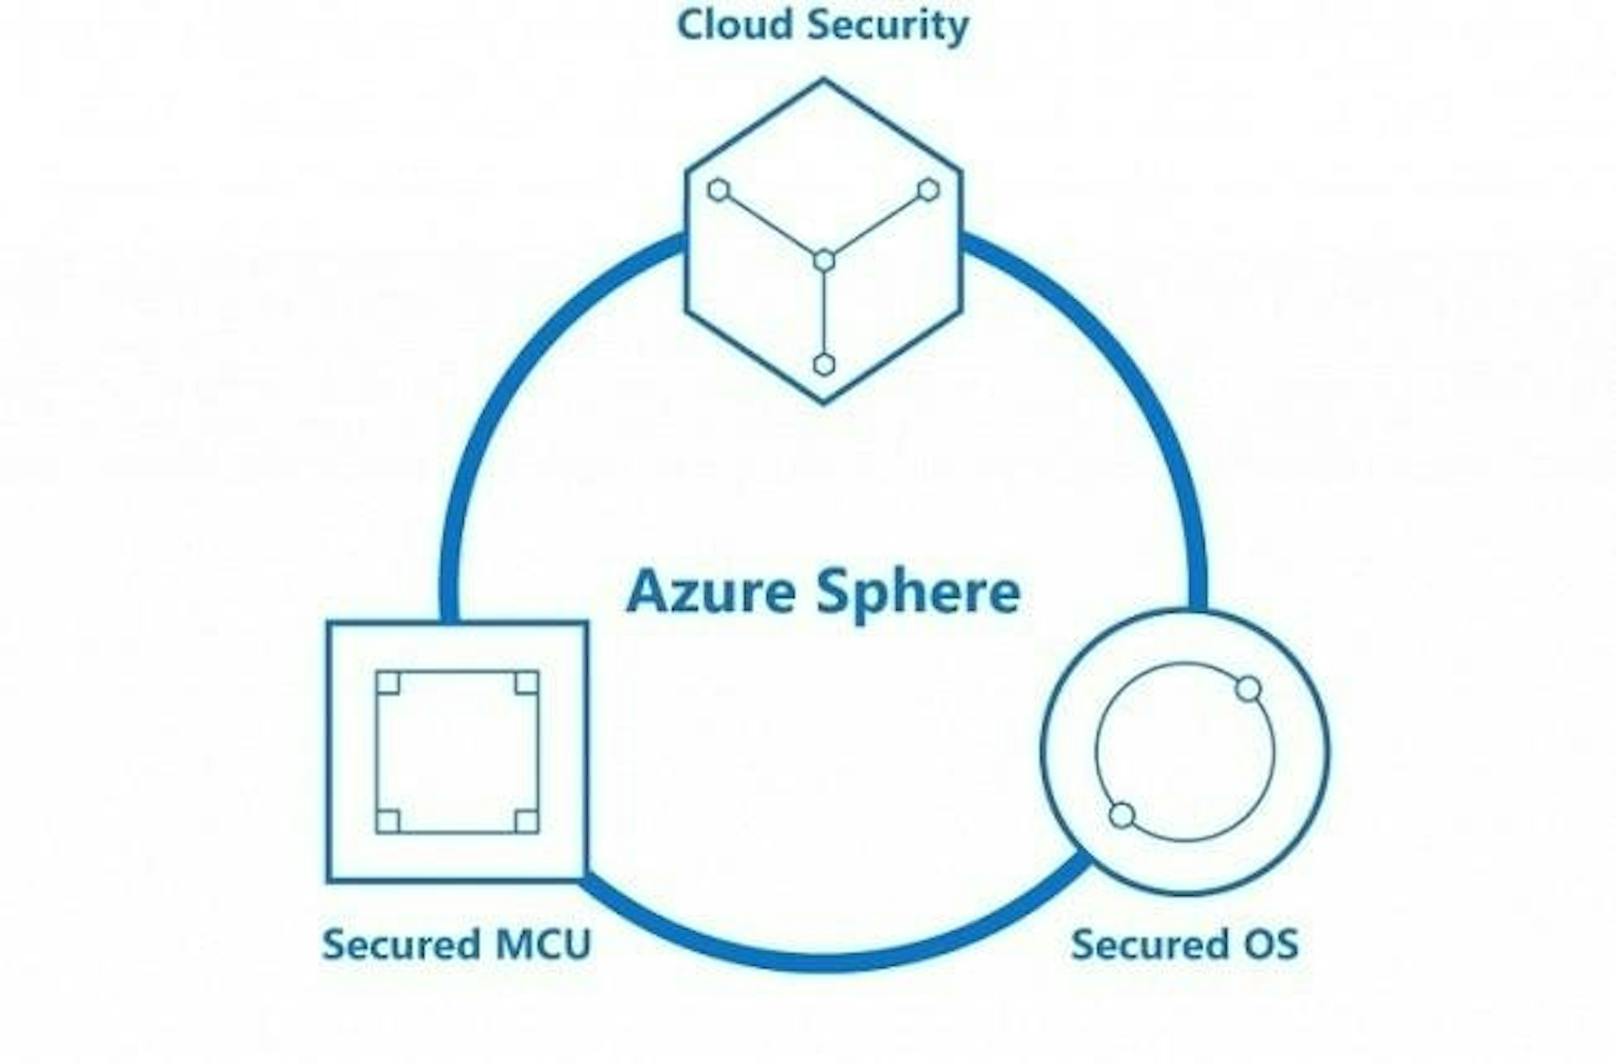 Microsoft hat auf der RSA-Konferenz 2018 Azure Sphere vorgestellt: Die Lösung ermöglicht es Herstellern, sichere, mit dem Internet verbundene Geräte auf Basis von Mikrocontrollern (MCU) für Smart-Home- sowie Industrie-4.0-Anwendungen zu bauen. Azure Sphere beinhaltet drei Komponenten: Azure Sphere zertifizierte Mikrocontroller, das speziell für sichere IoT-Anwendungen entwickelte Betriebssystem Azure Sphere OS sowie den schlüsselfertigen Cloud-Dienst Azure Sphere Security Service für den Schutz der verbundenen Geräte. Azure Sphere ist als private Preview mit ausgewählten Geräteherstellern gestartet. Die ersten Azure Sphere Geräte werden für Ende 2018 erwartet.